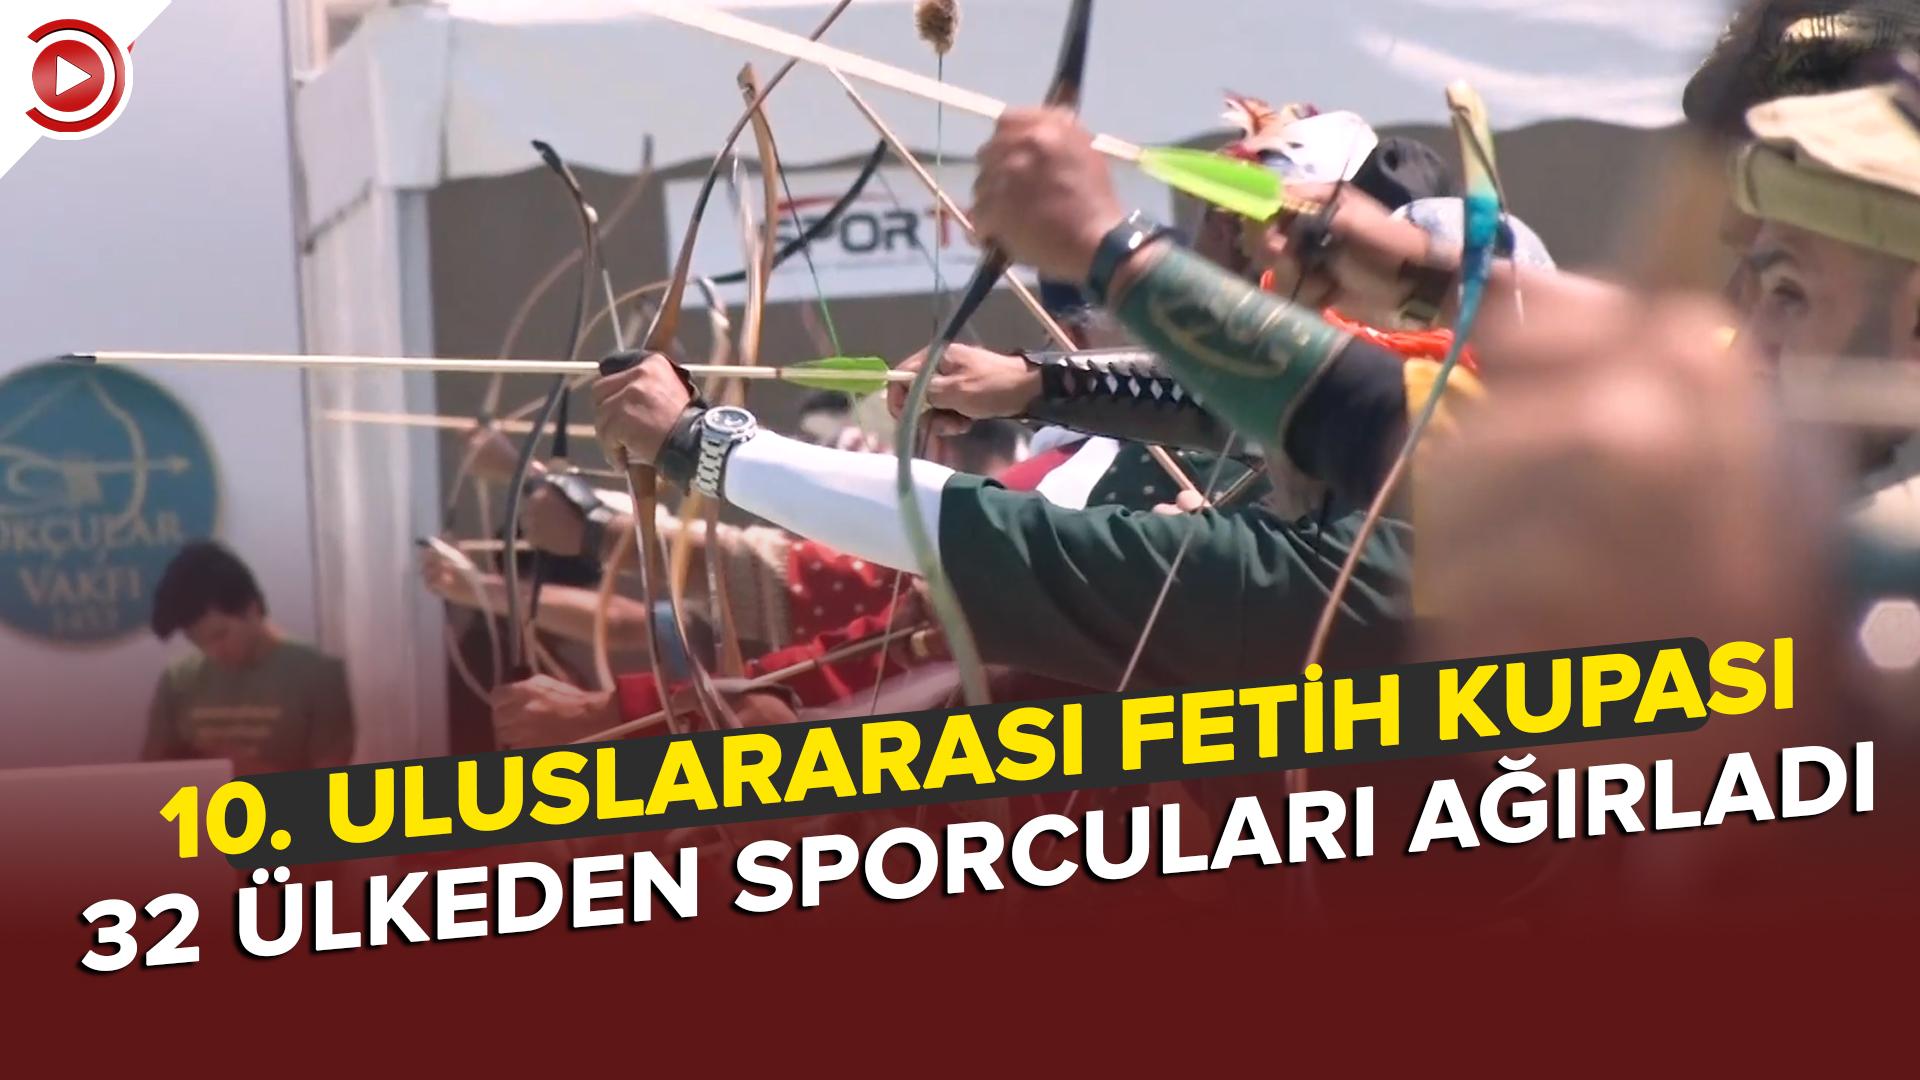 İstanbul'un fethinin 569. yıl dönümü etkinlikleri kapsamında gerçekleştirilen 10. Uluslararası Fetih Kupası başladı…